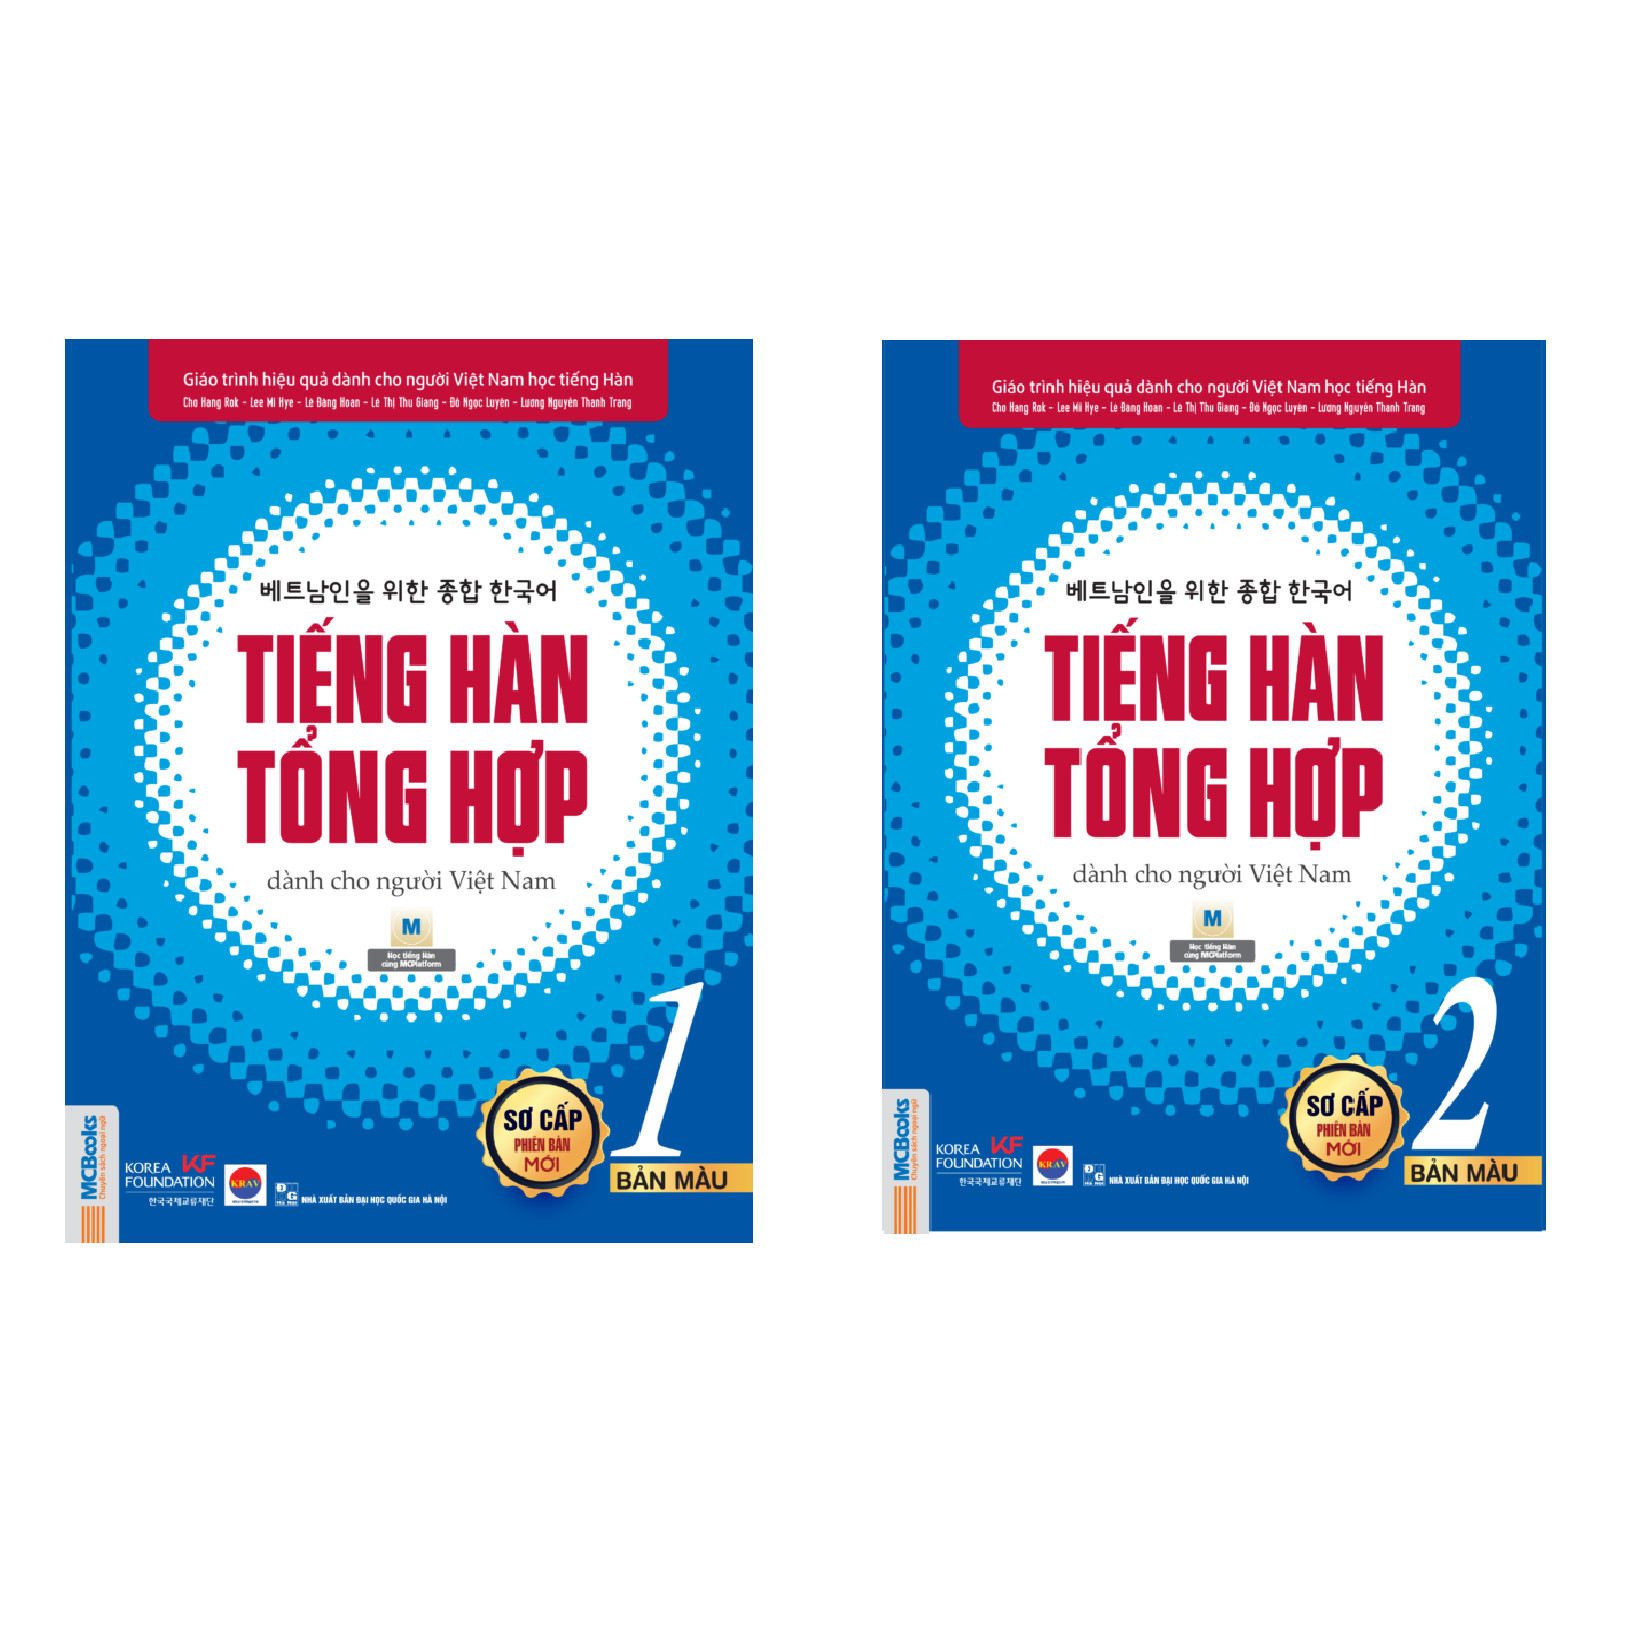 Combo Tiếng Hàn tổng hợp dành cho người Việt Nam (Phiên bản mới) - Sơ cấp 1 và Sơ cấp 2 (Bản màu Nghe qua app)